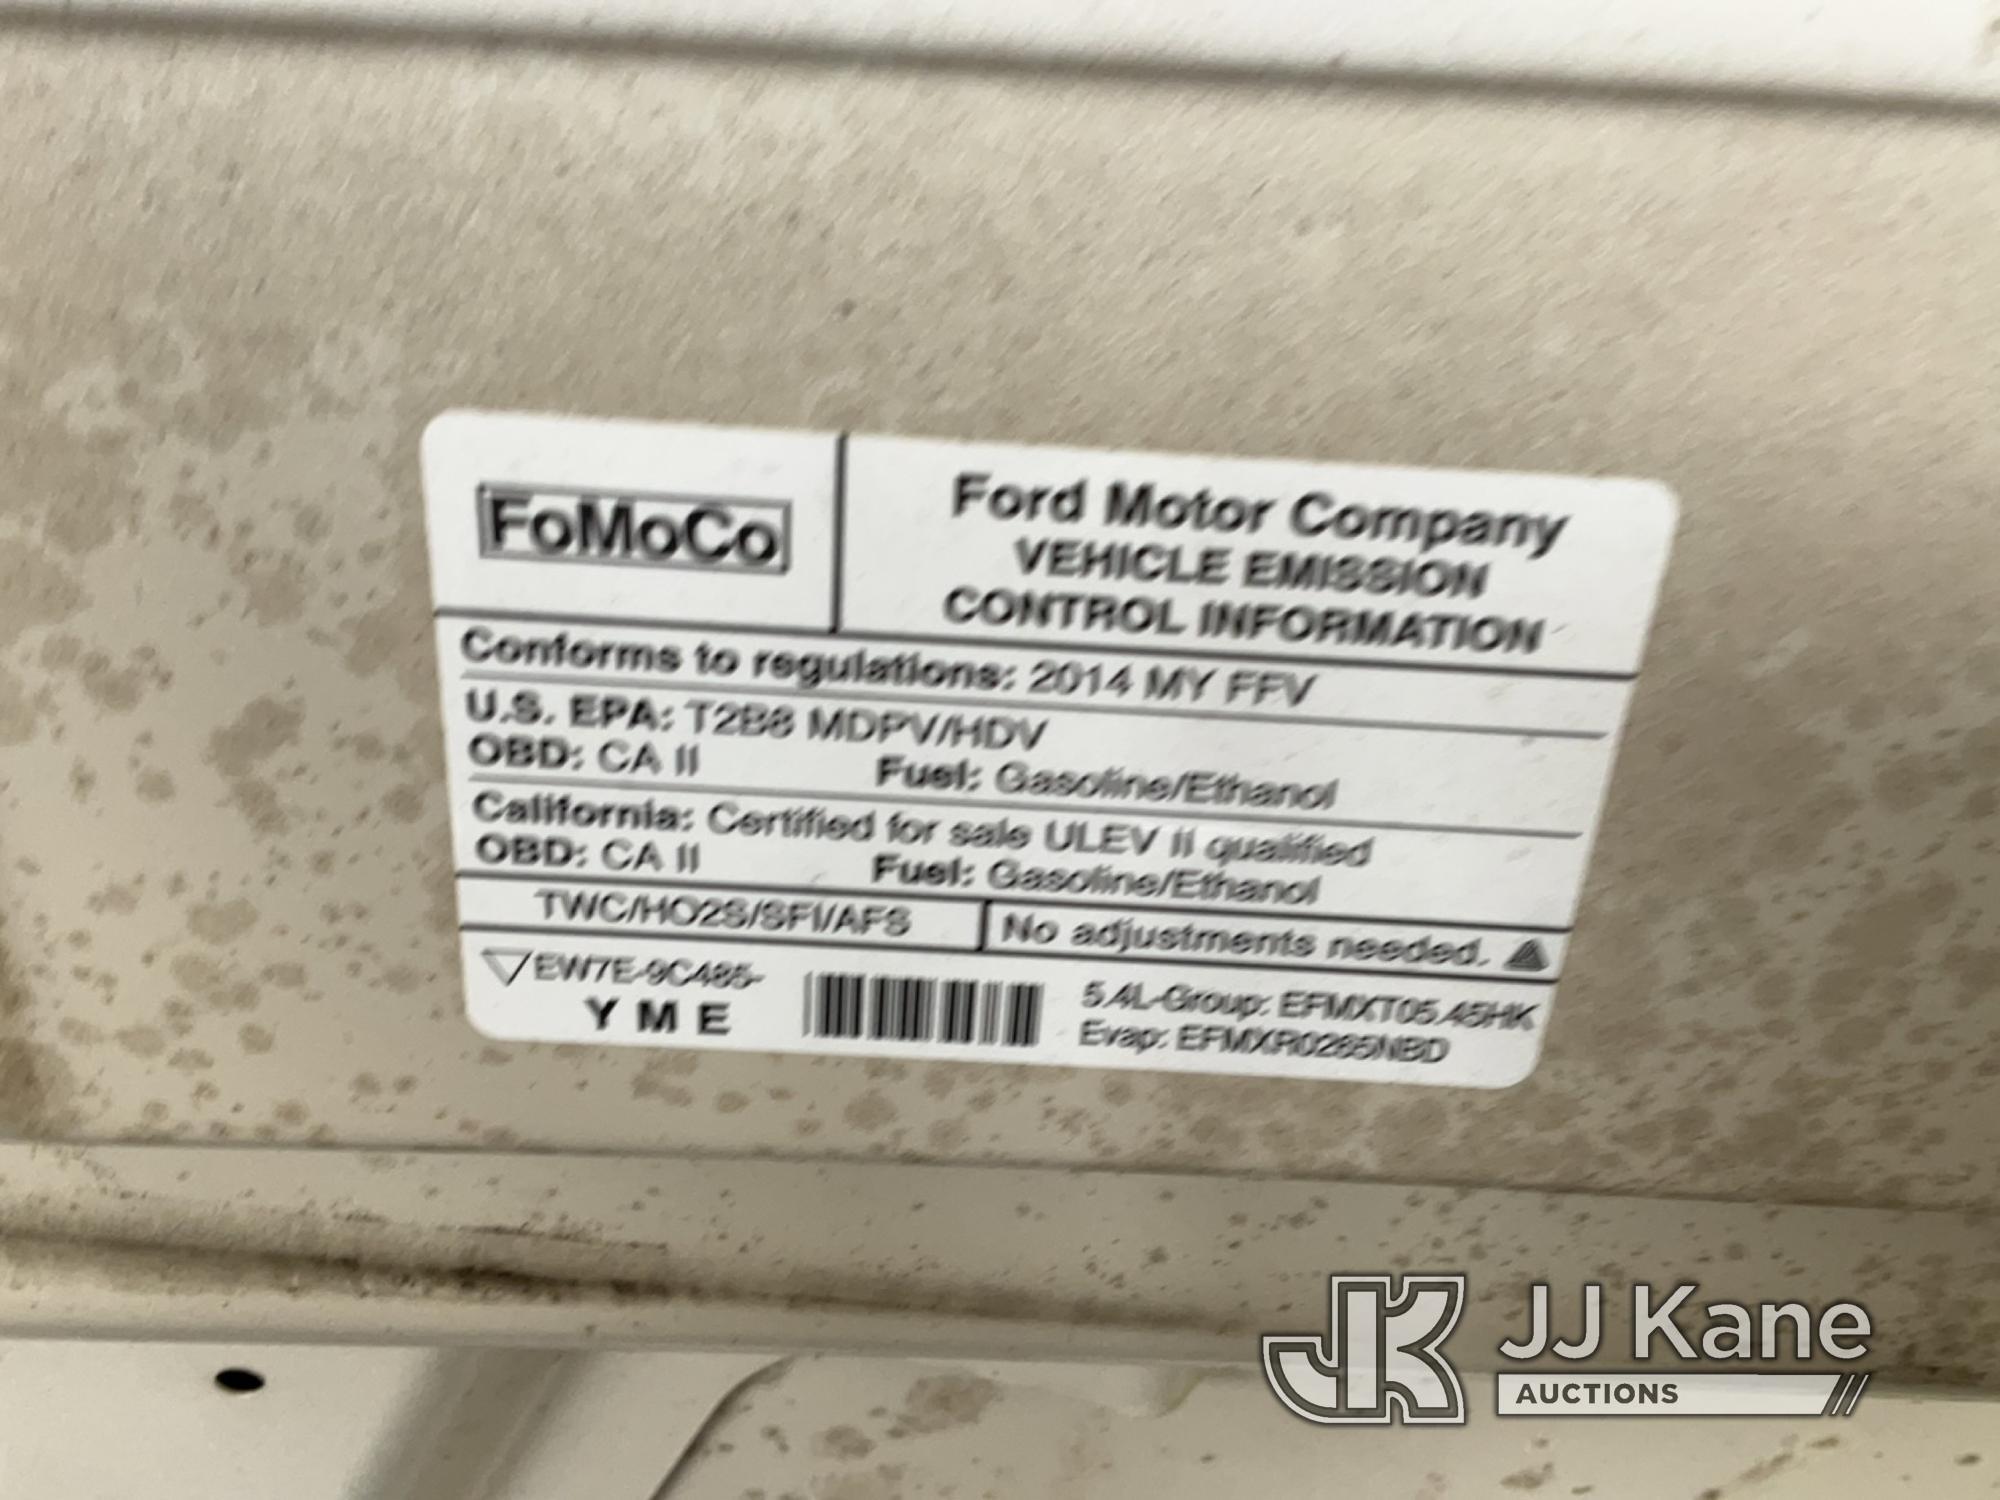 (Jurupa Valley, CA) 2014 Ford E350 Passenger Van Runs & Moves